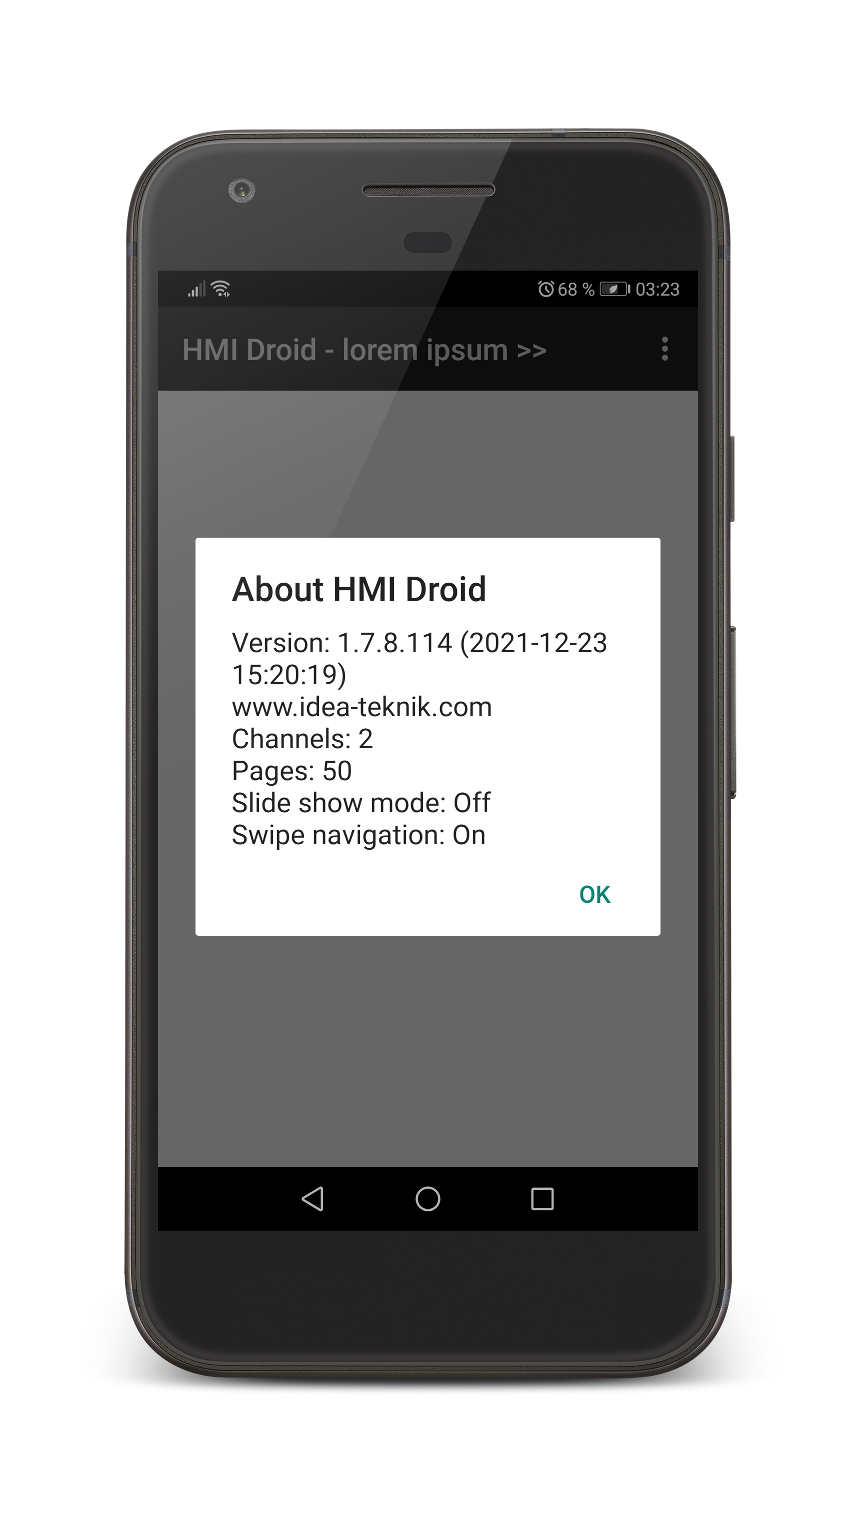 HMI Droid 1.7.8.114 - About